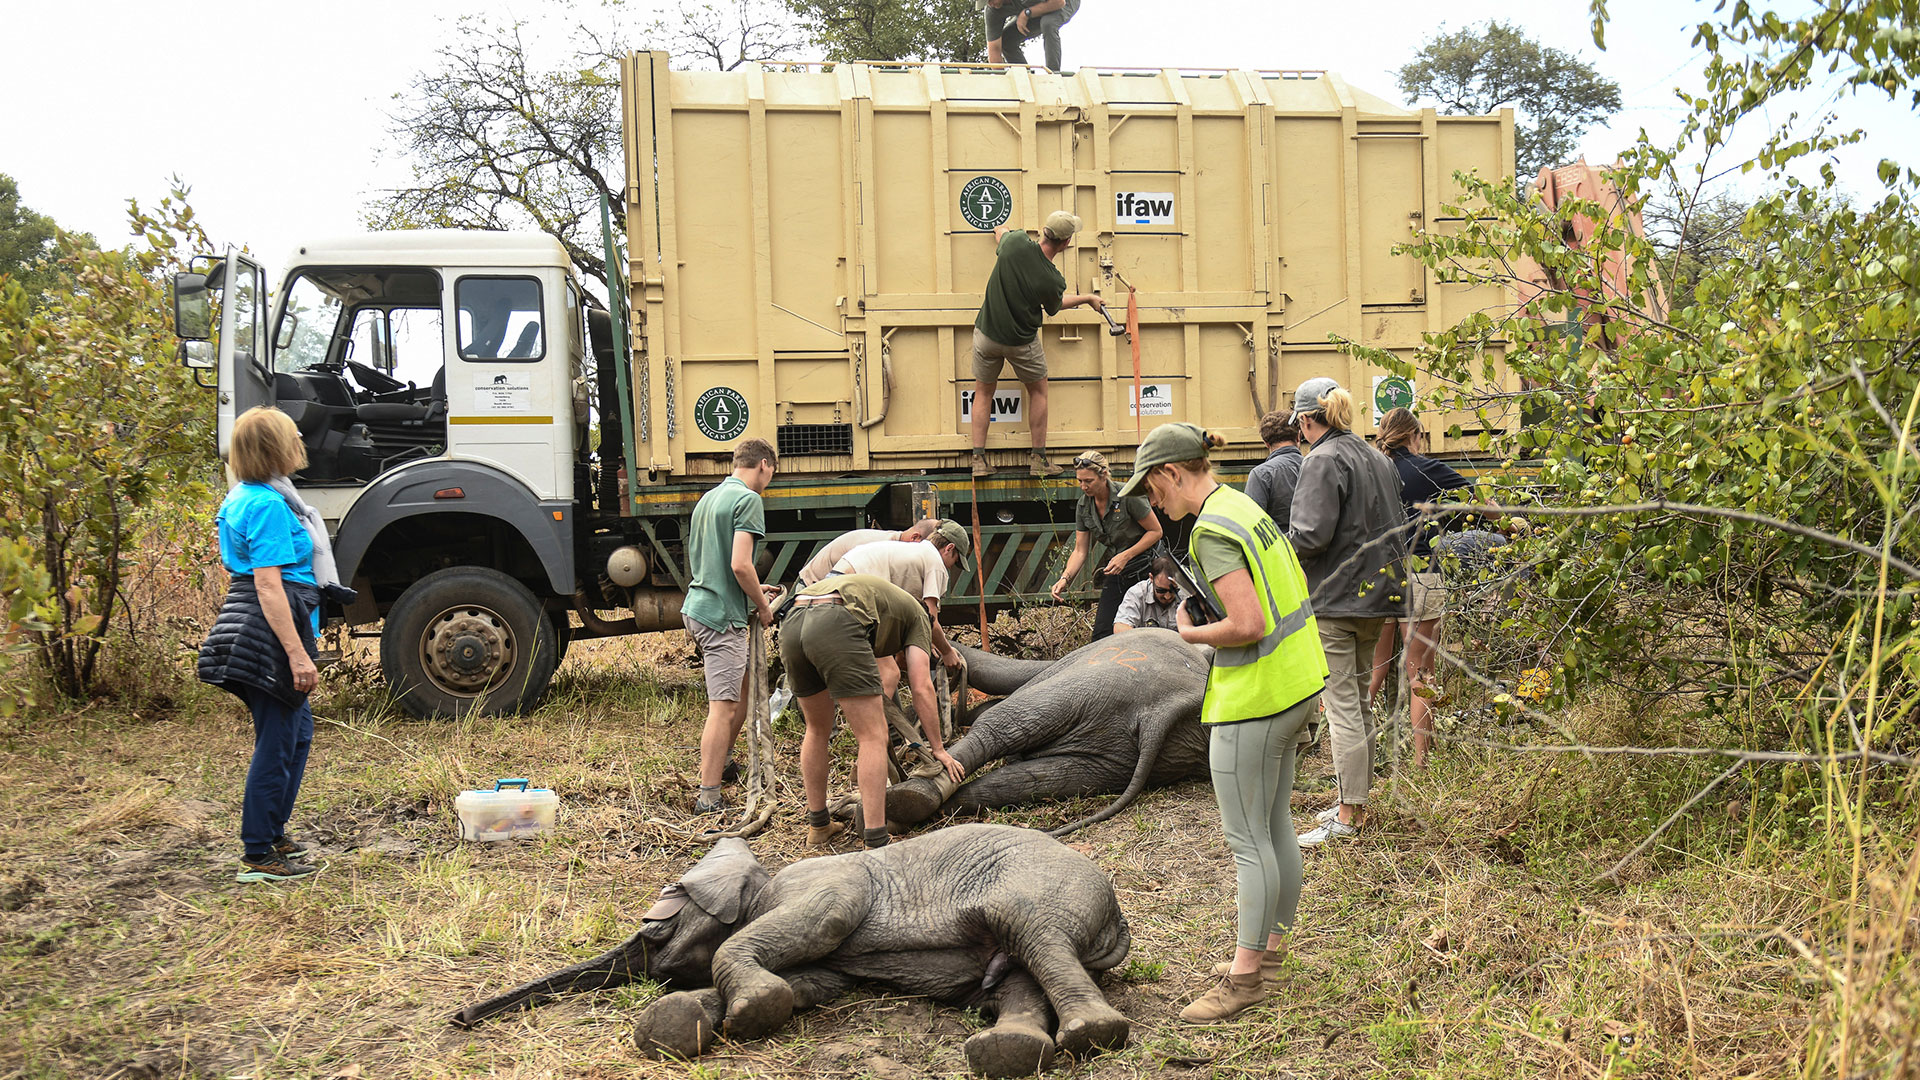 ARCHIVO - Los elefantes se preparan para ser izados a un vehículo de transporte en el Parque Nacional Liwonde, en el sur de Malawi, el 10 de julio de 2022. (Foto AP/Thoko Chikondo, archivo)

